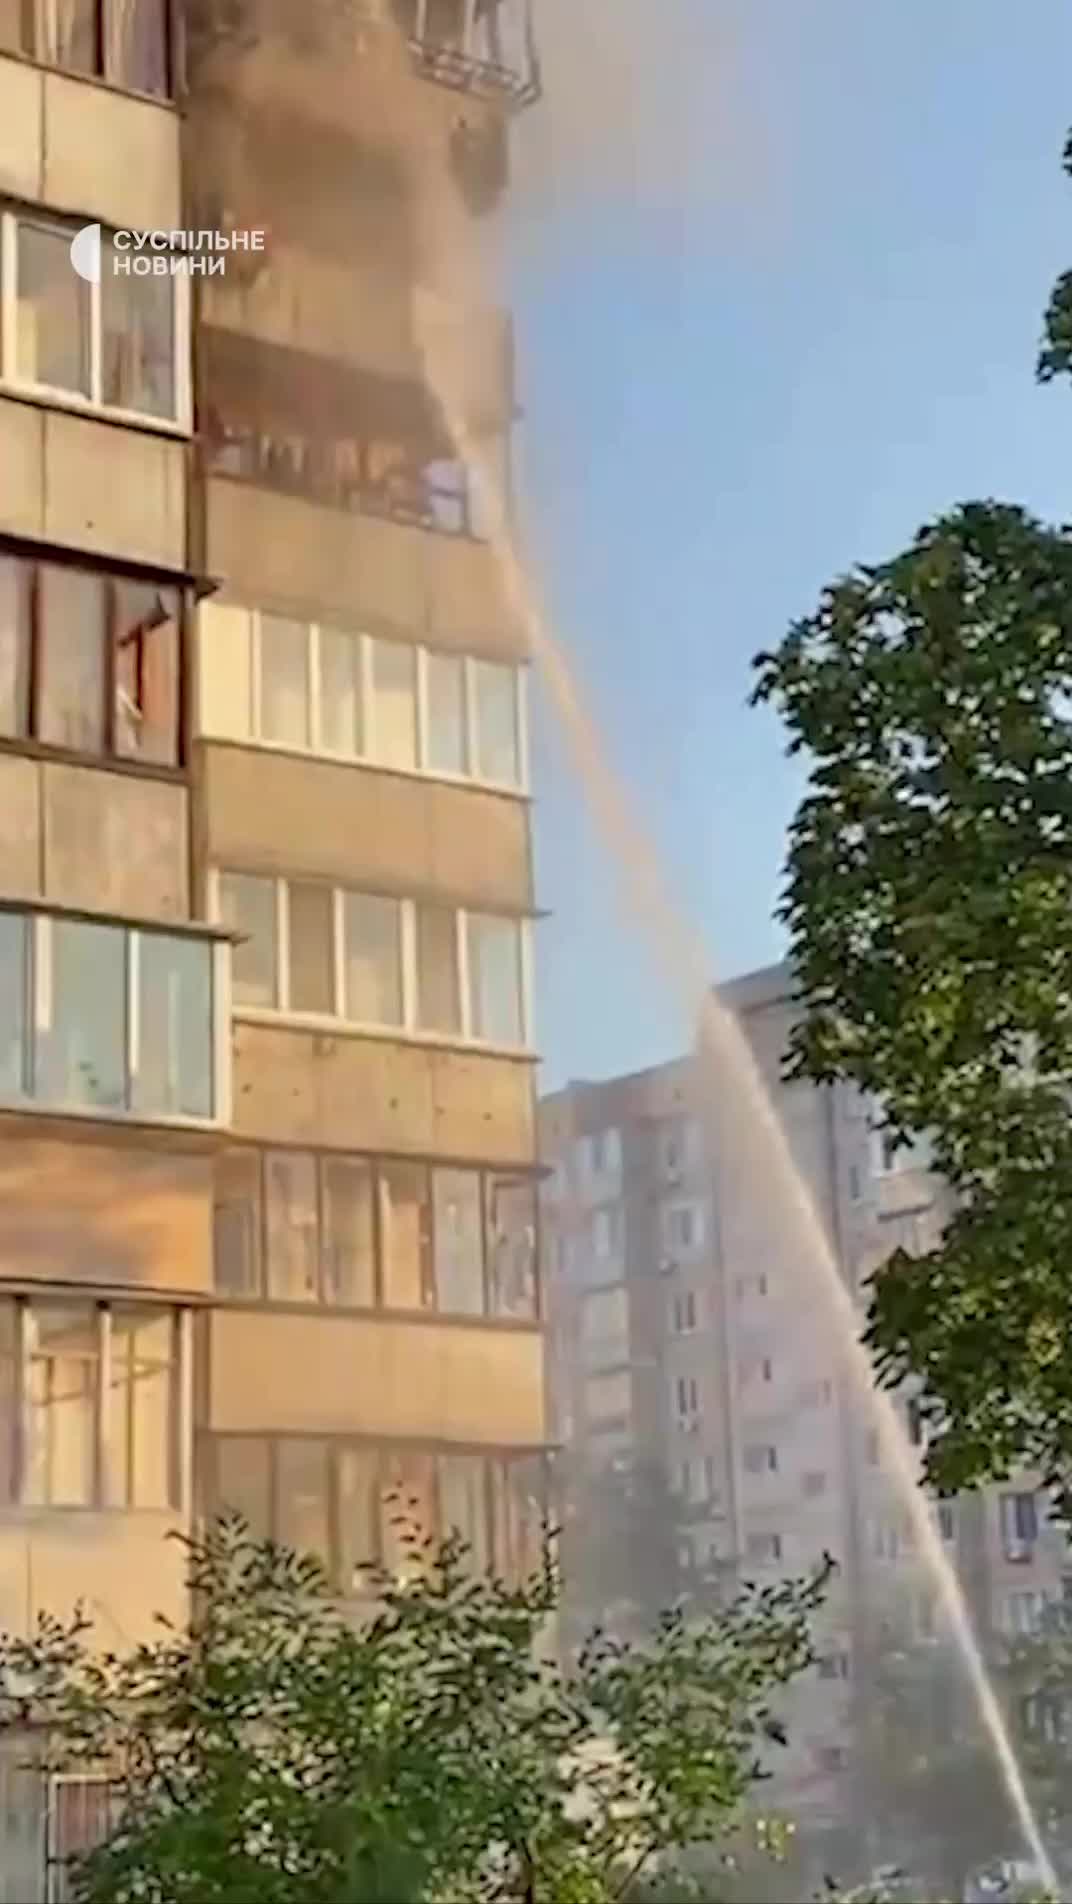 مبنى سكني تضرر نتيجة الهجوم الصاروخي الروسي على منطقة أوبولونسكي في كييف